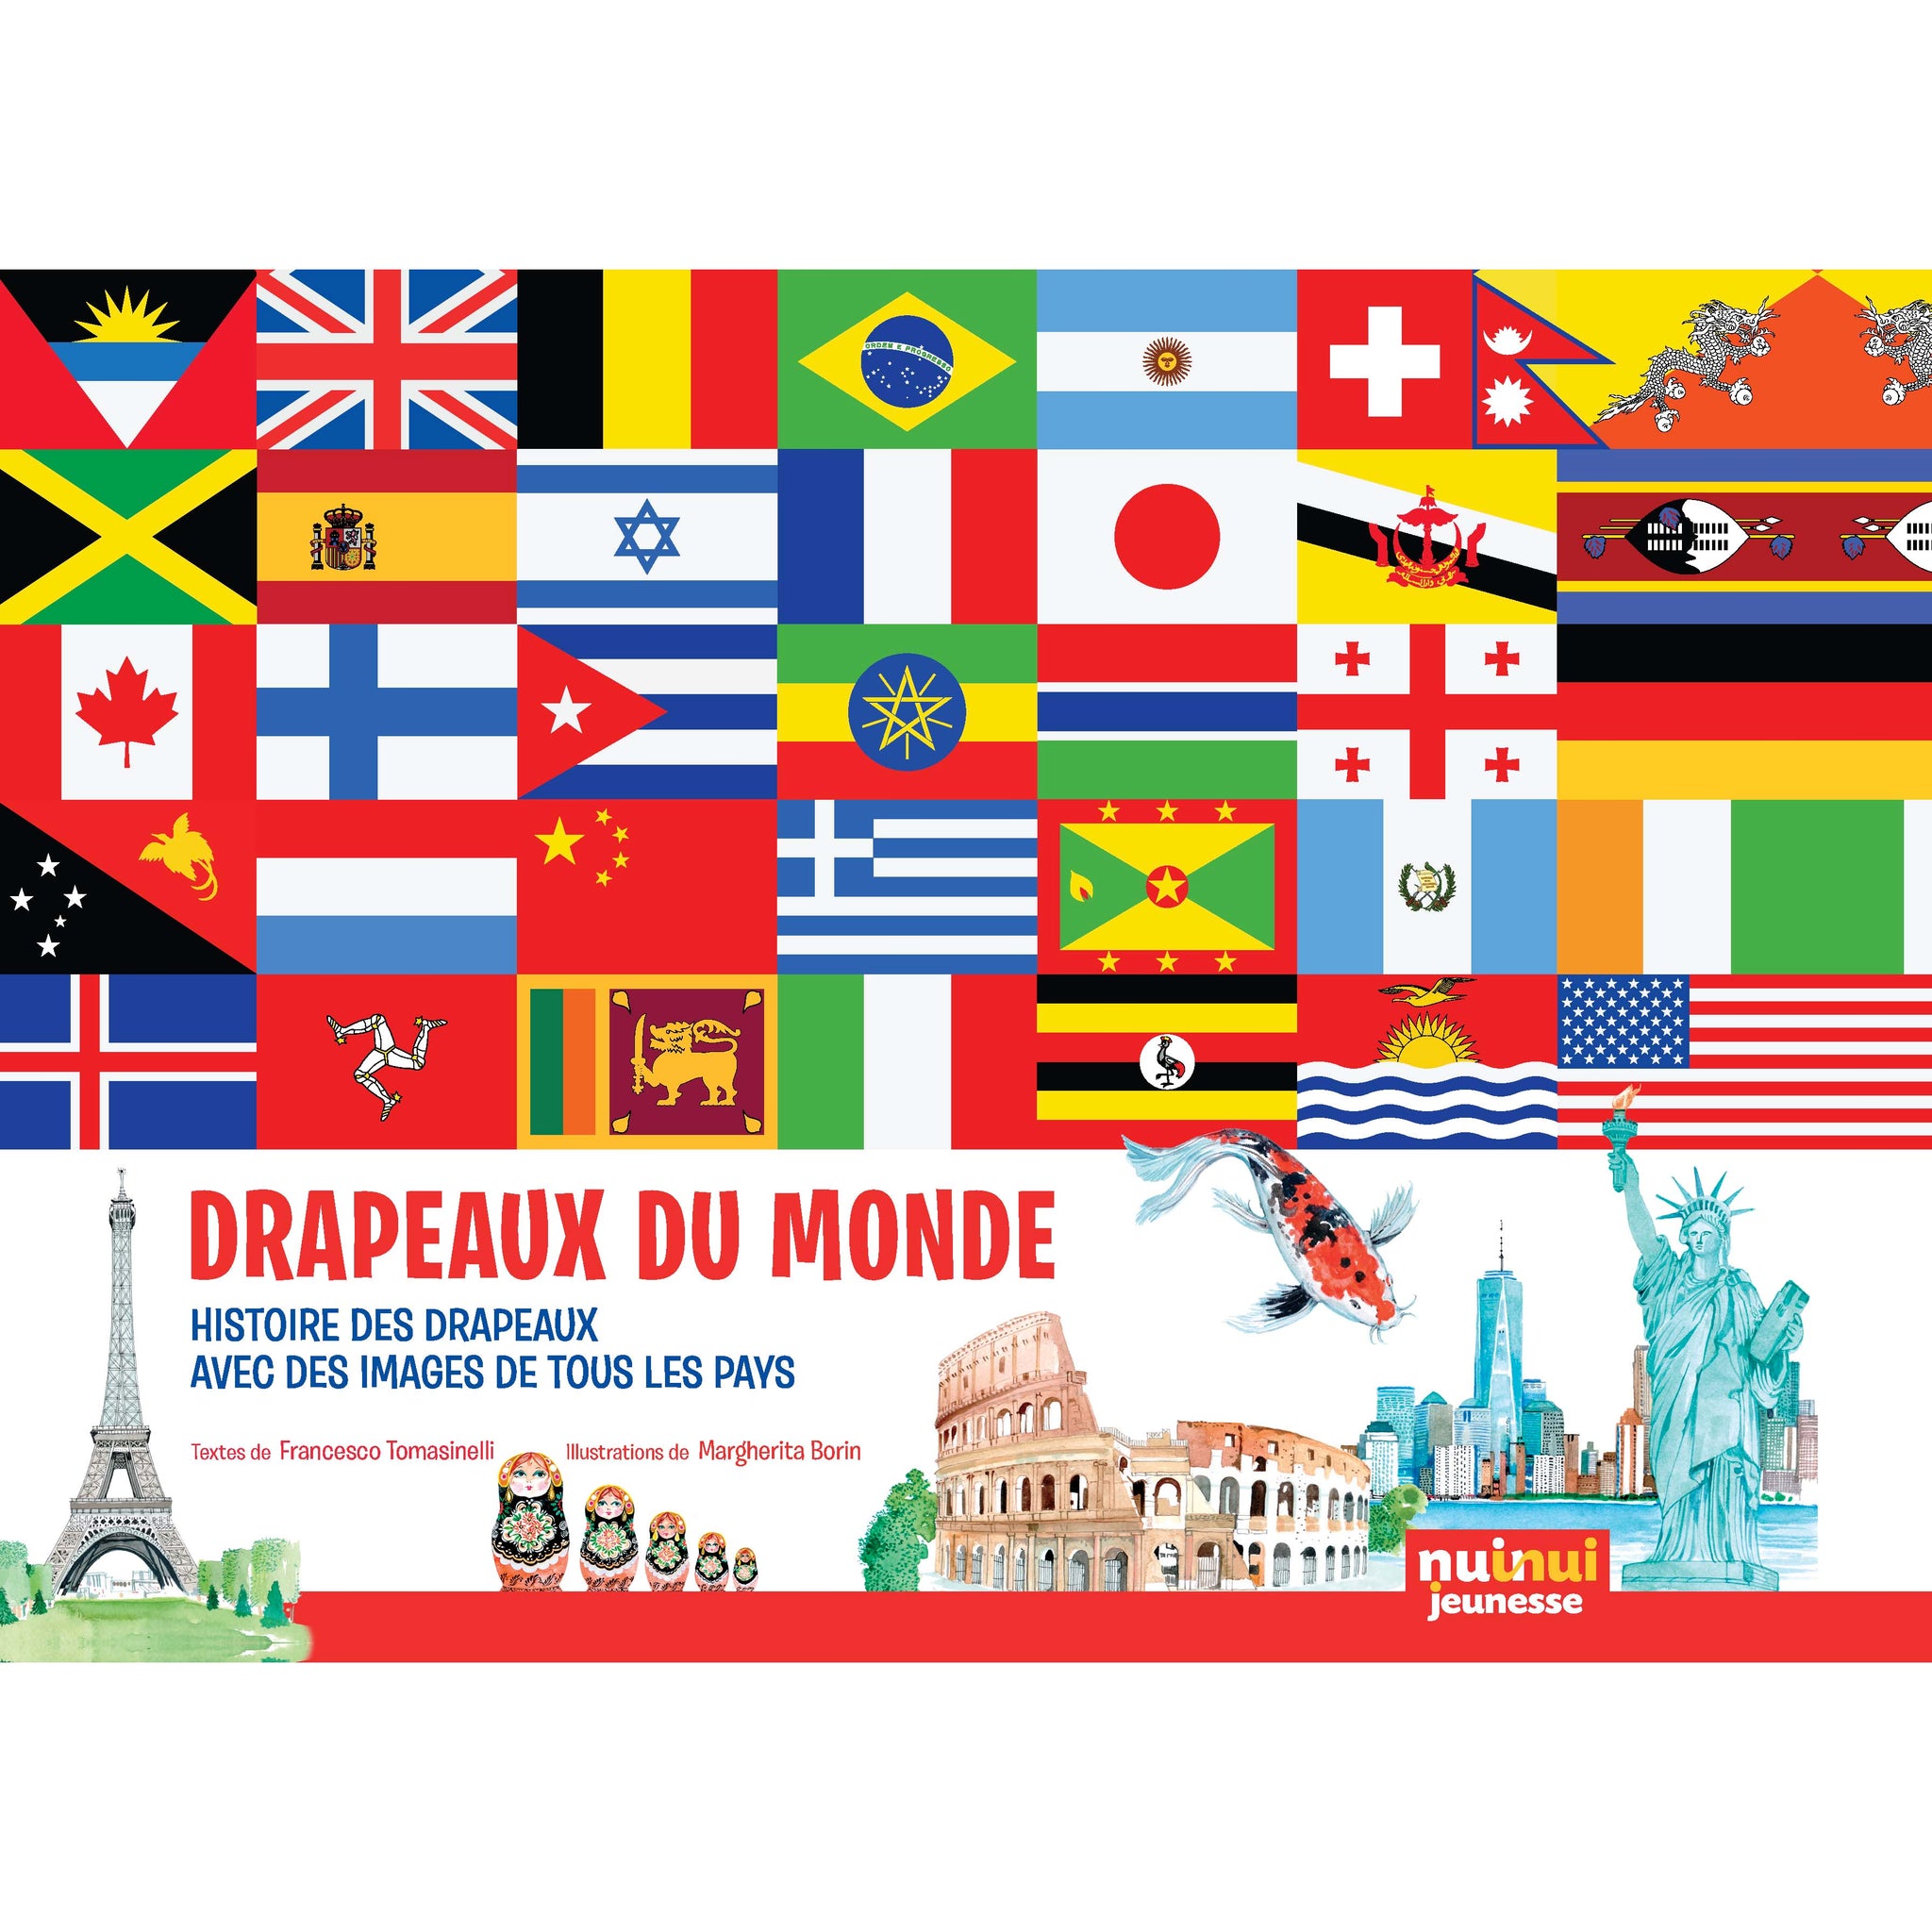 Drapeaux du monde - Histoire des drapeaux avec des images de tous les pays